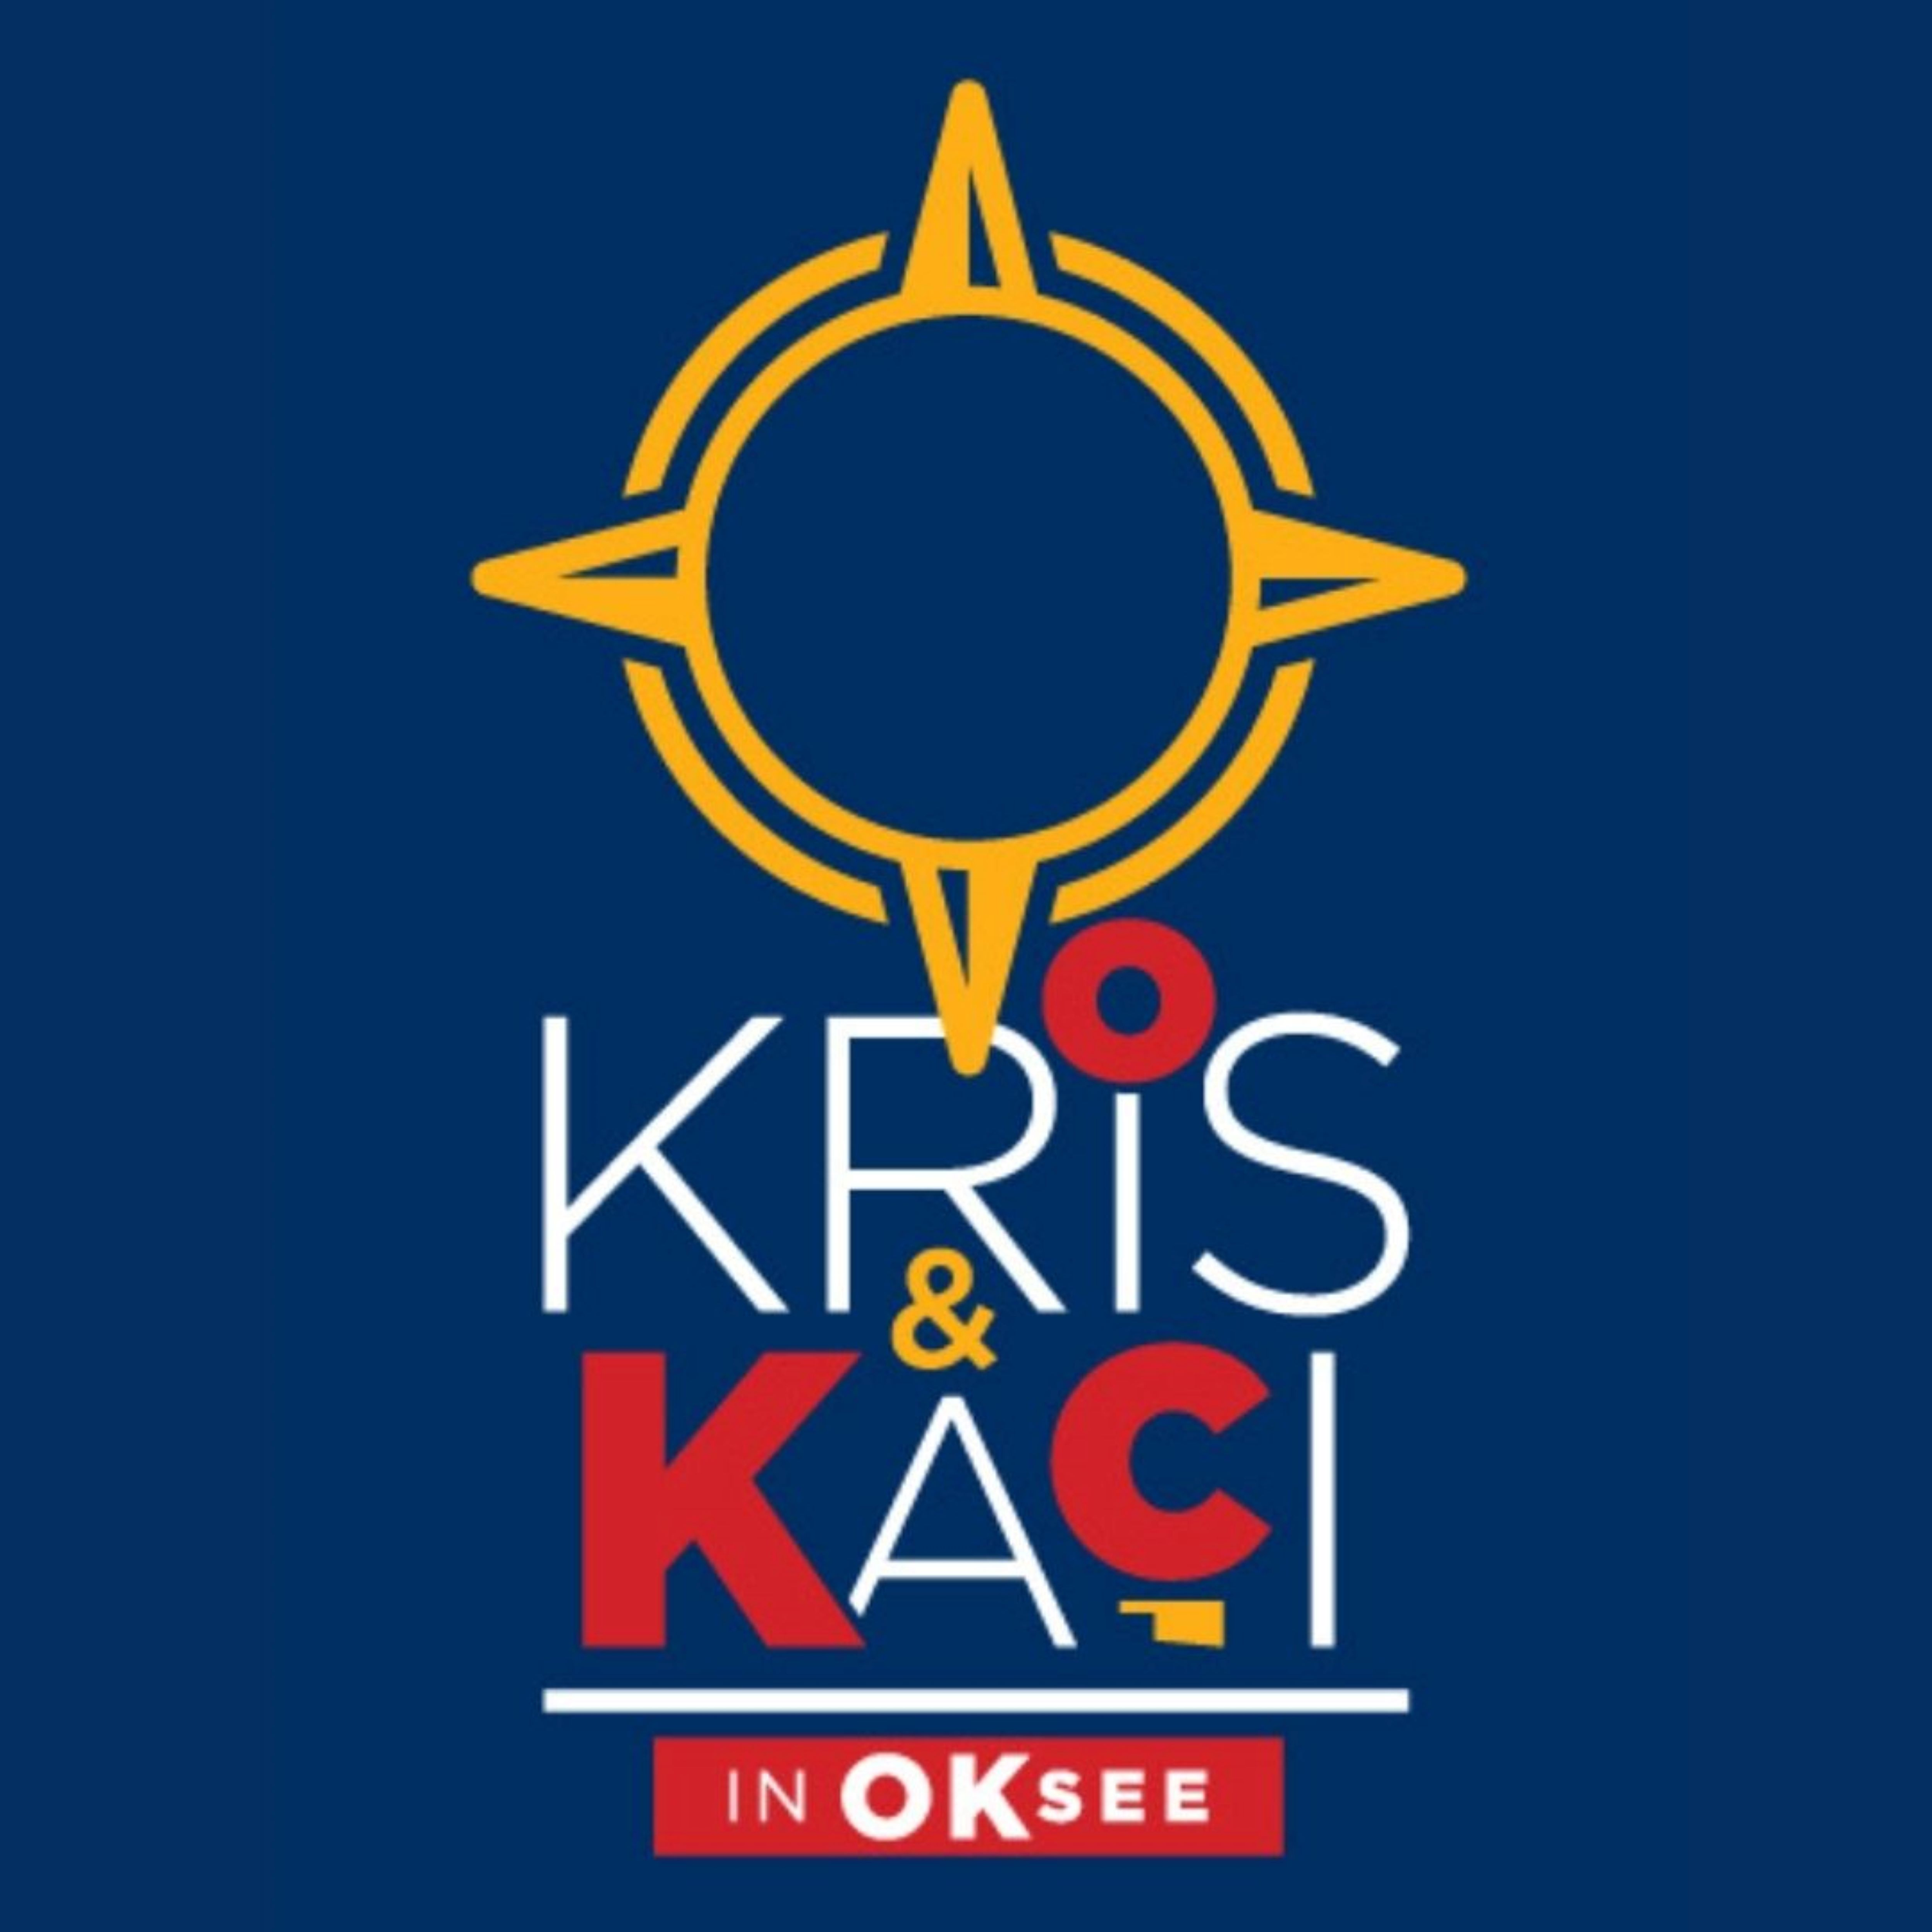 Kris & Kaci in OKC